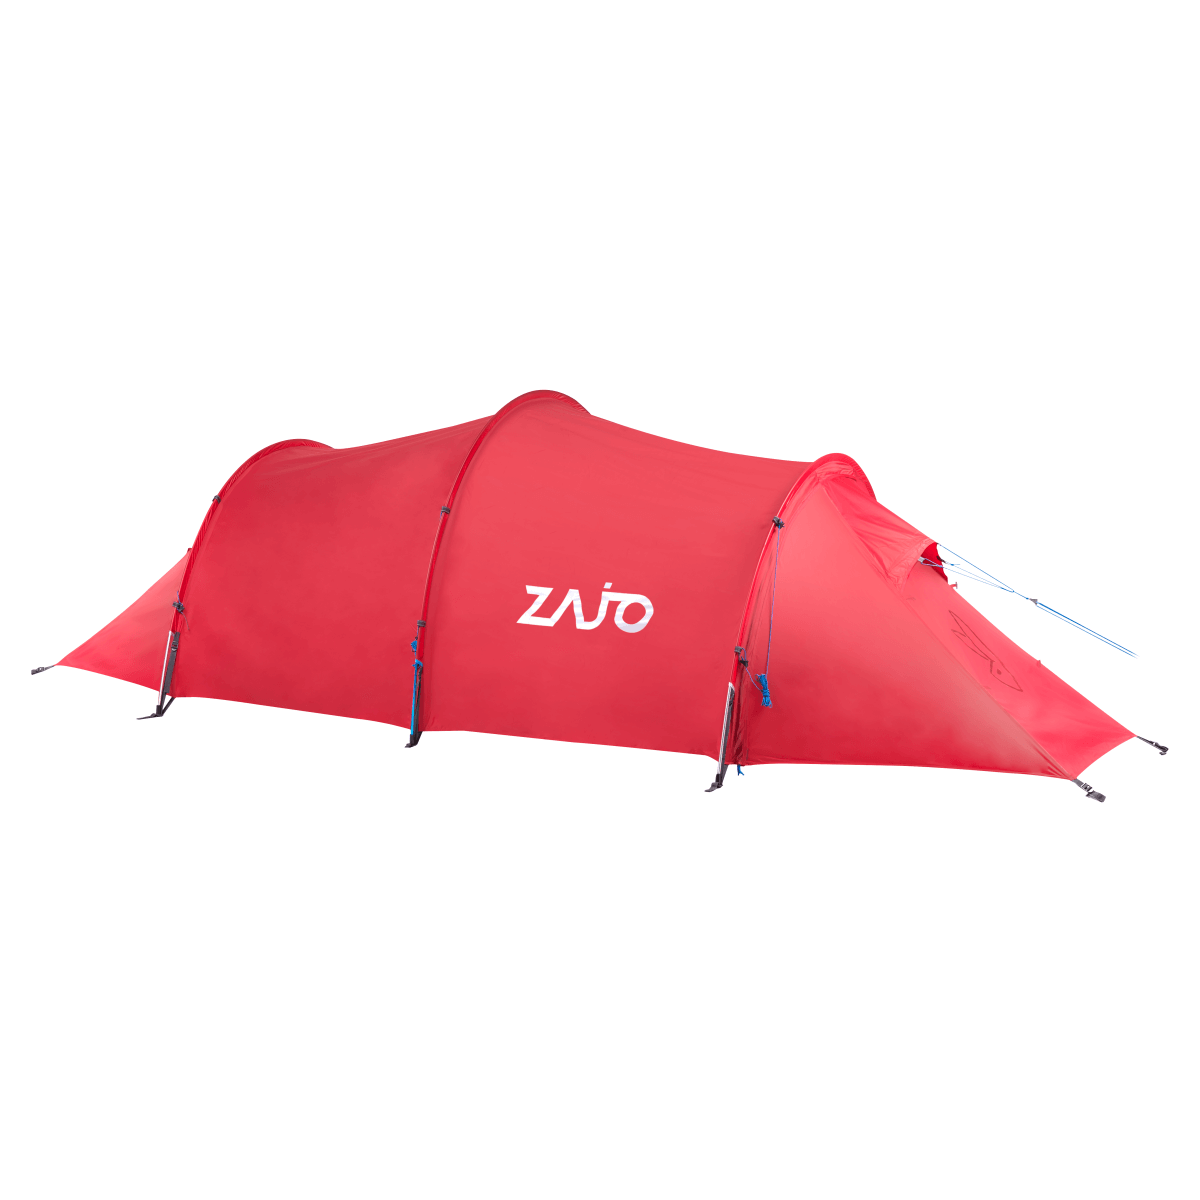 Stany Zajo Lapland 3 Tent